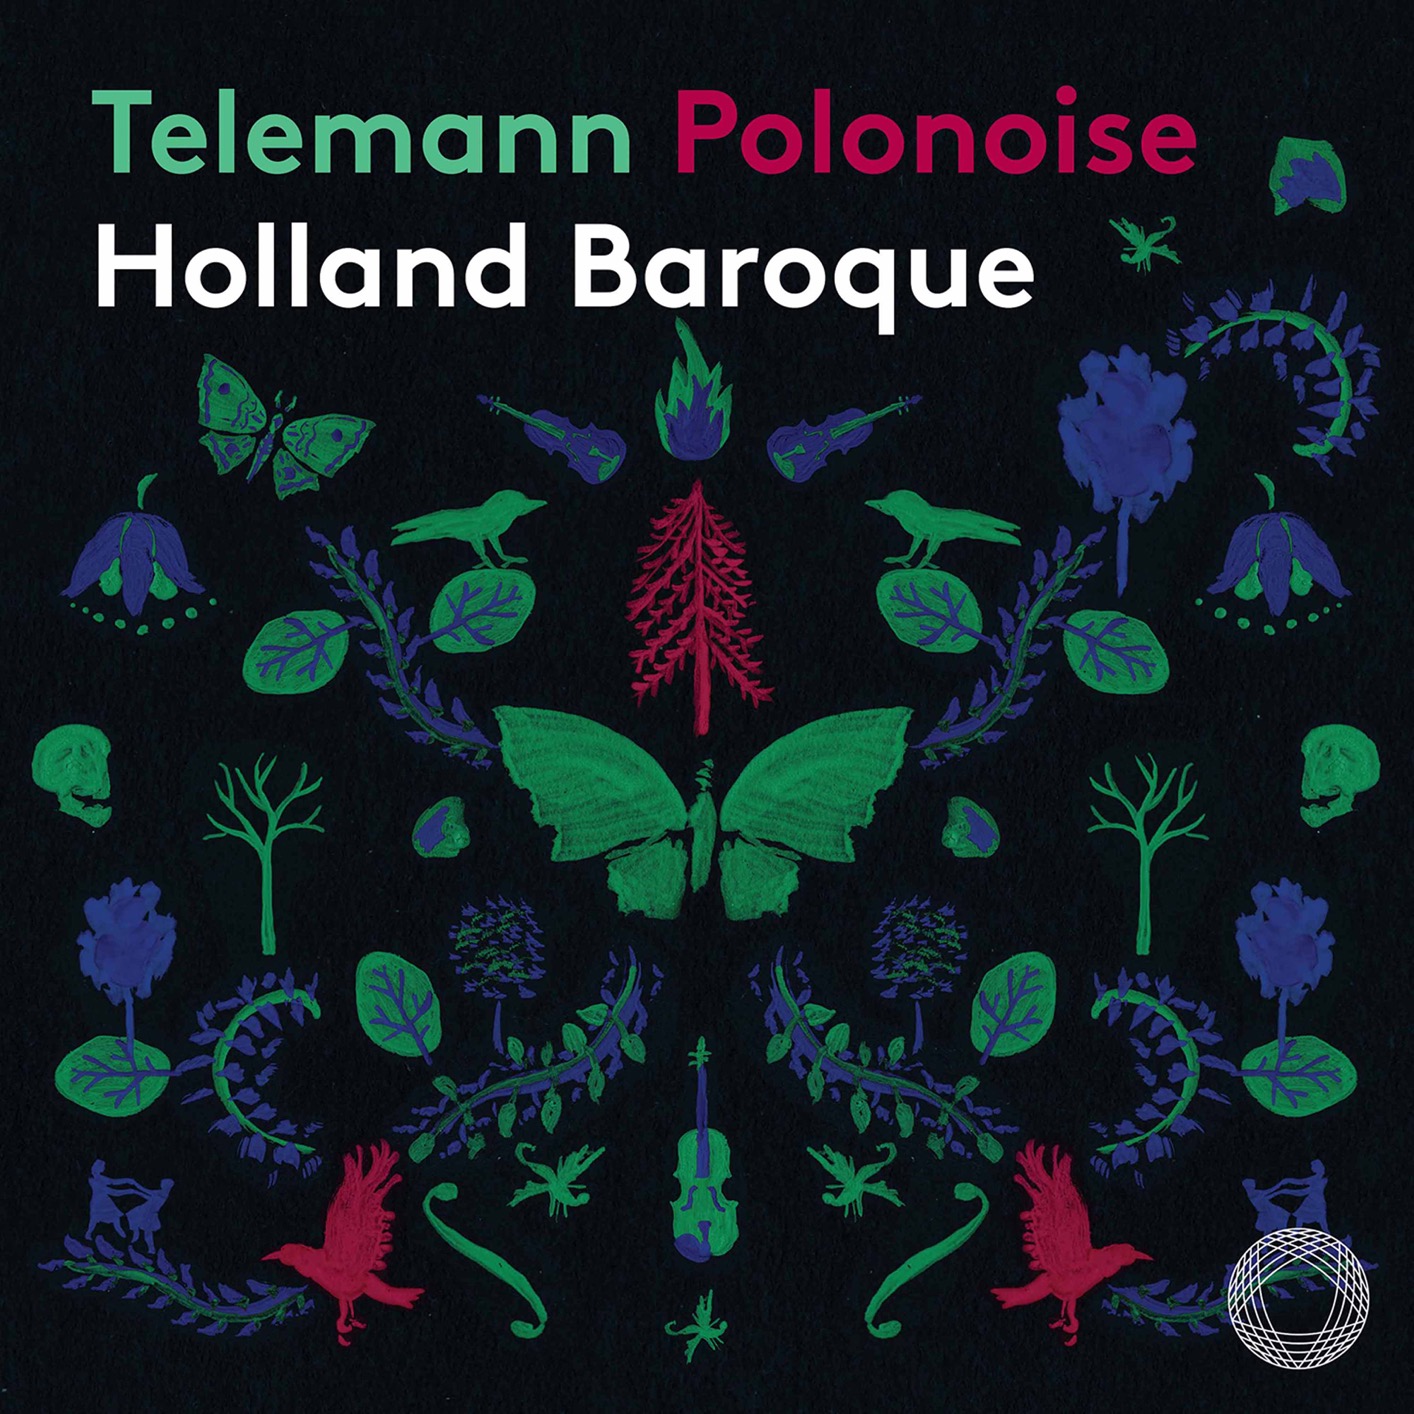 Holland Baroque - Telemann: Polonoise (2021) [FLAC 24bit/96kHz]